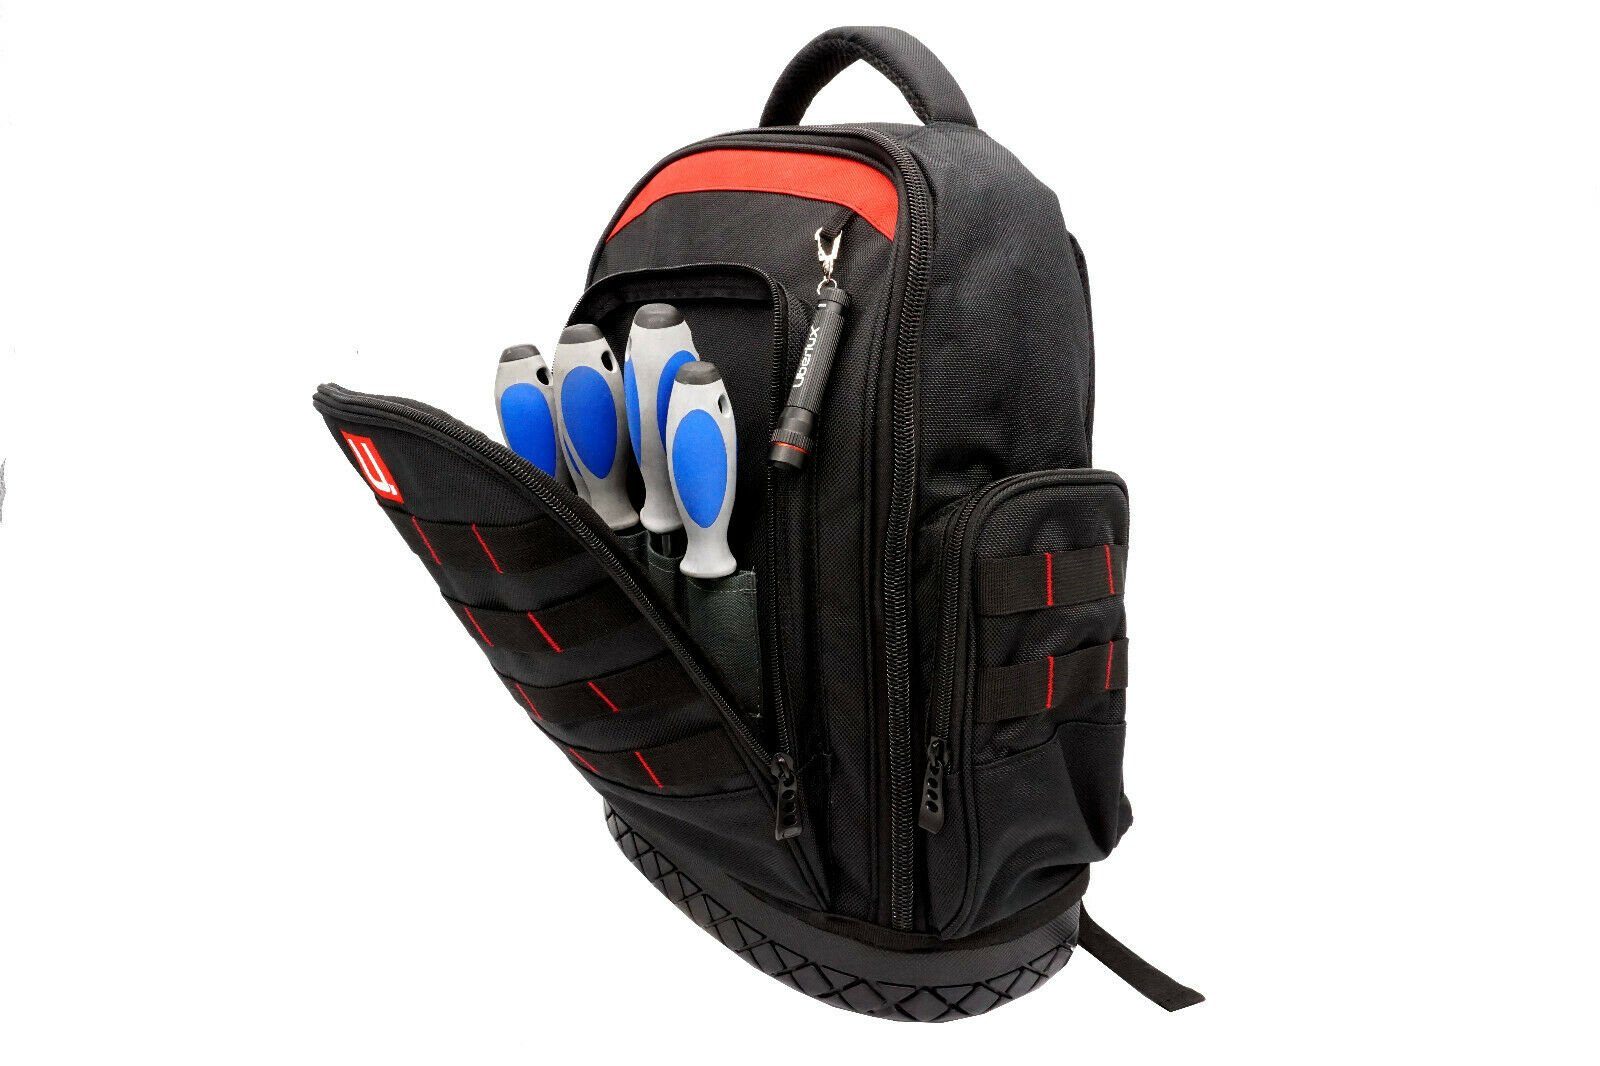 U.Uberlux Werkzeugtasche Werkzeugrucksack mit Laptopfach für Elektriker Schlaufe Schlüssel, Laptopfach, leer Arbeitstasche Taschenlampe, etc. schwarz